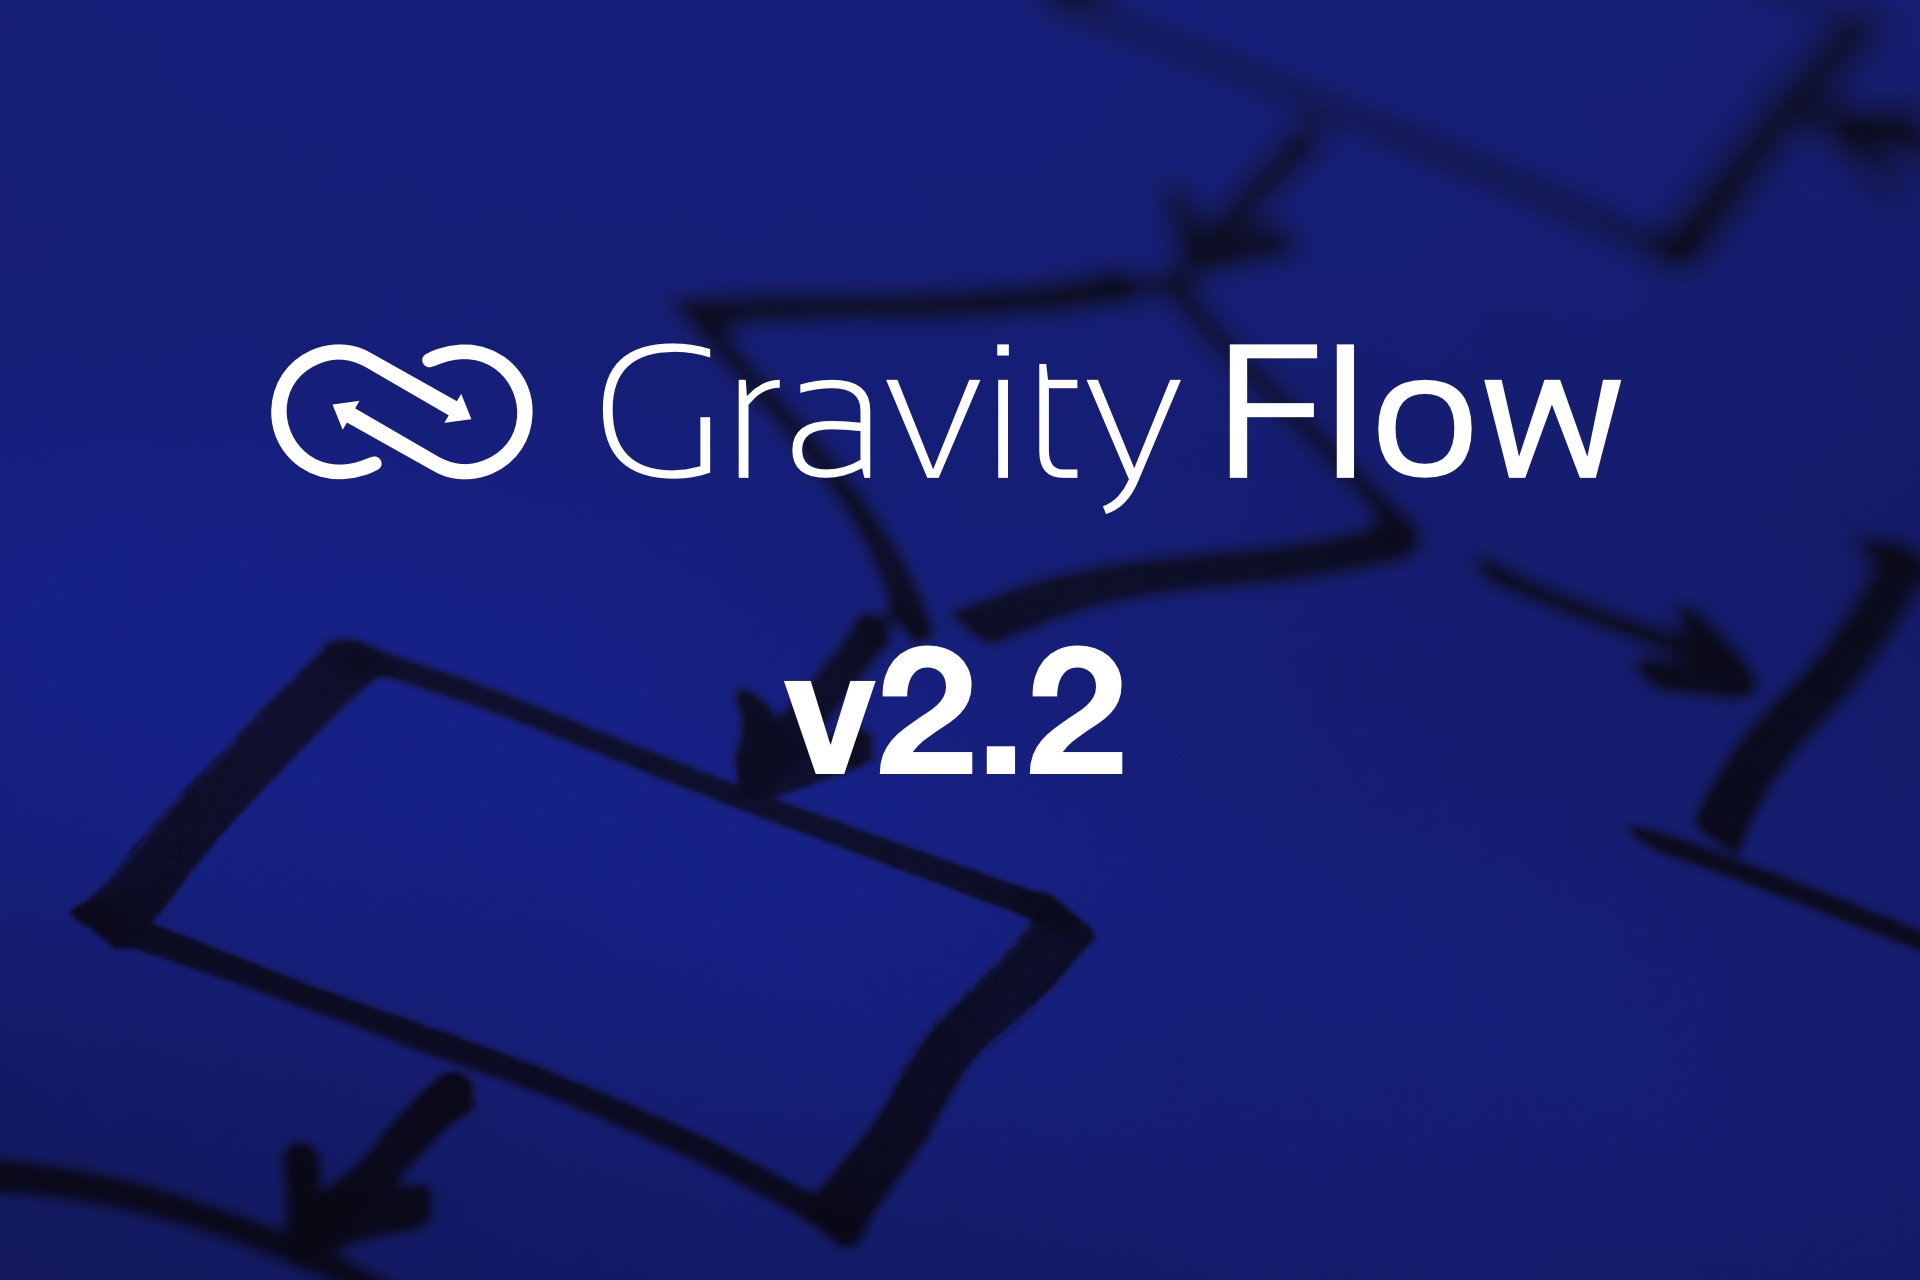 Gravity Flow v2.2 Released